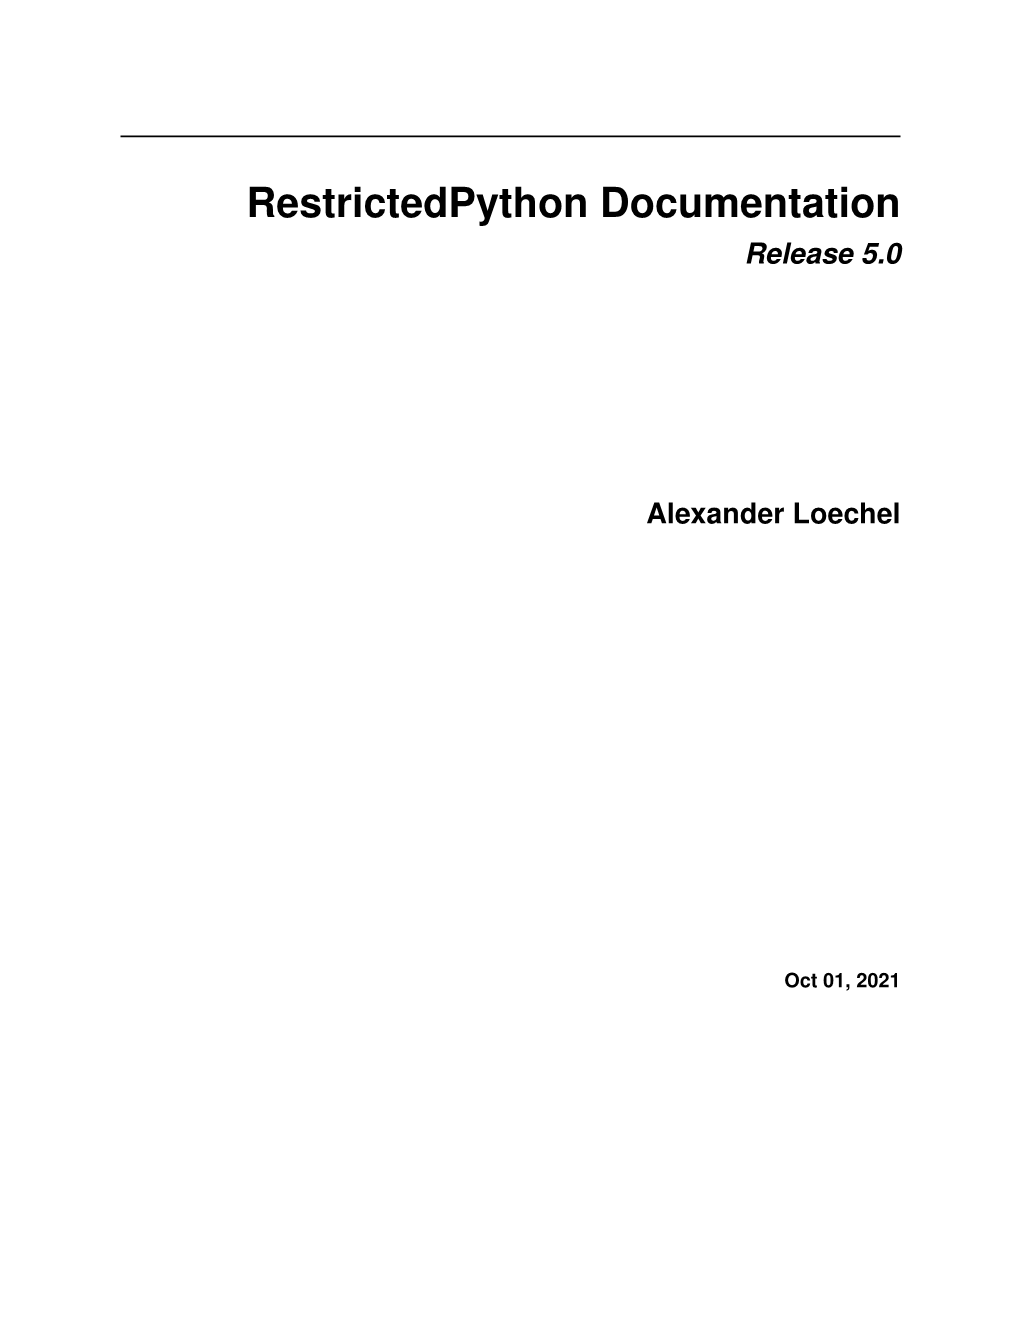 Restrictedpython Documentation Release 5.0